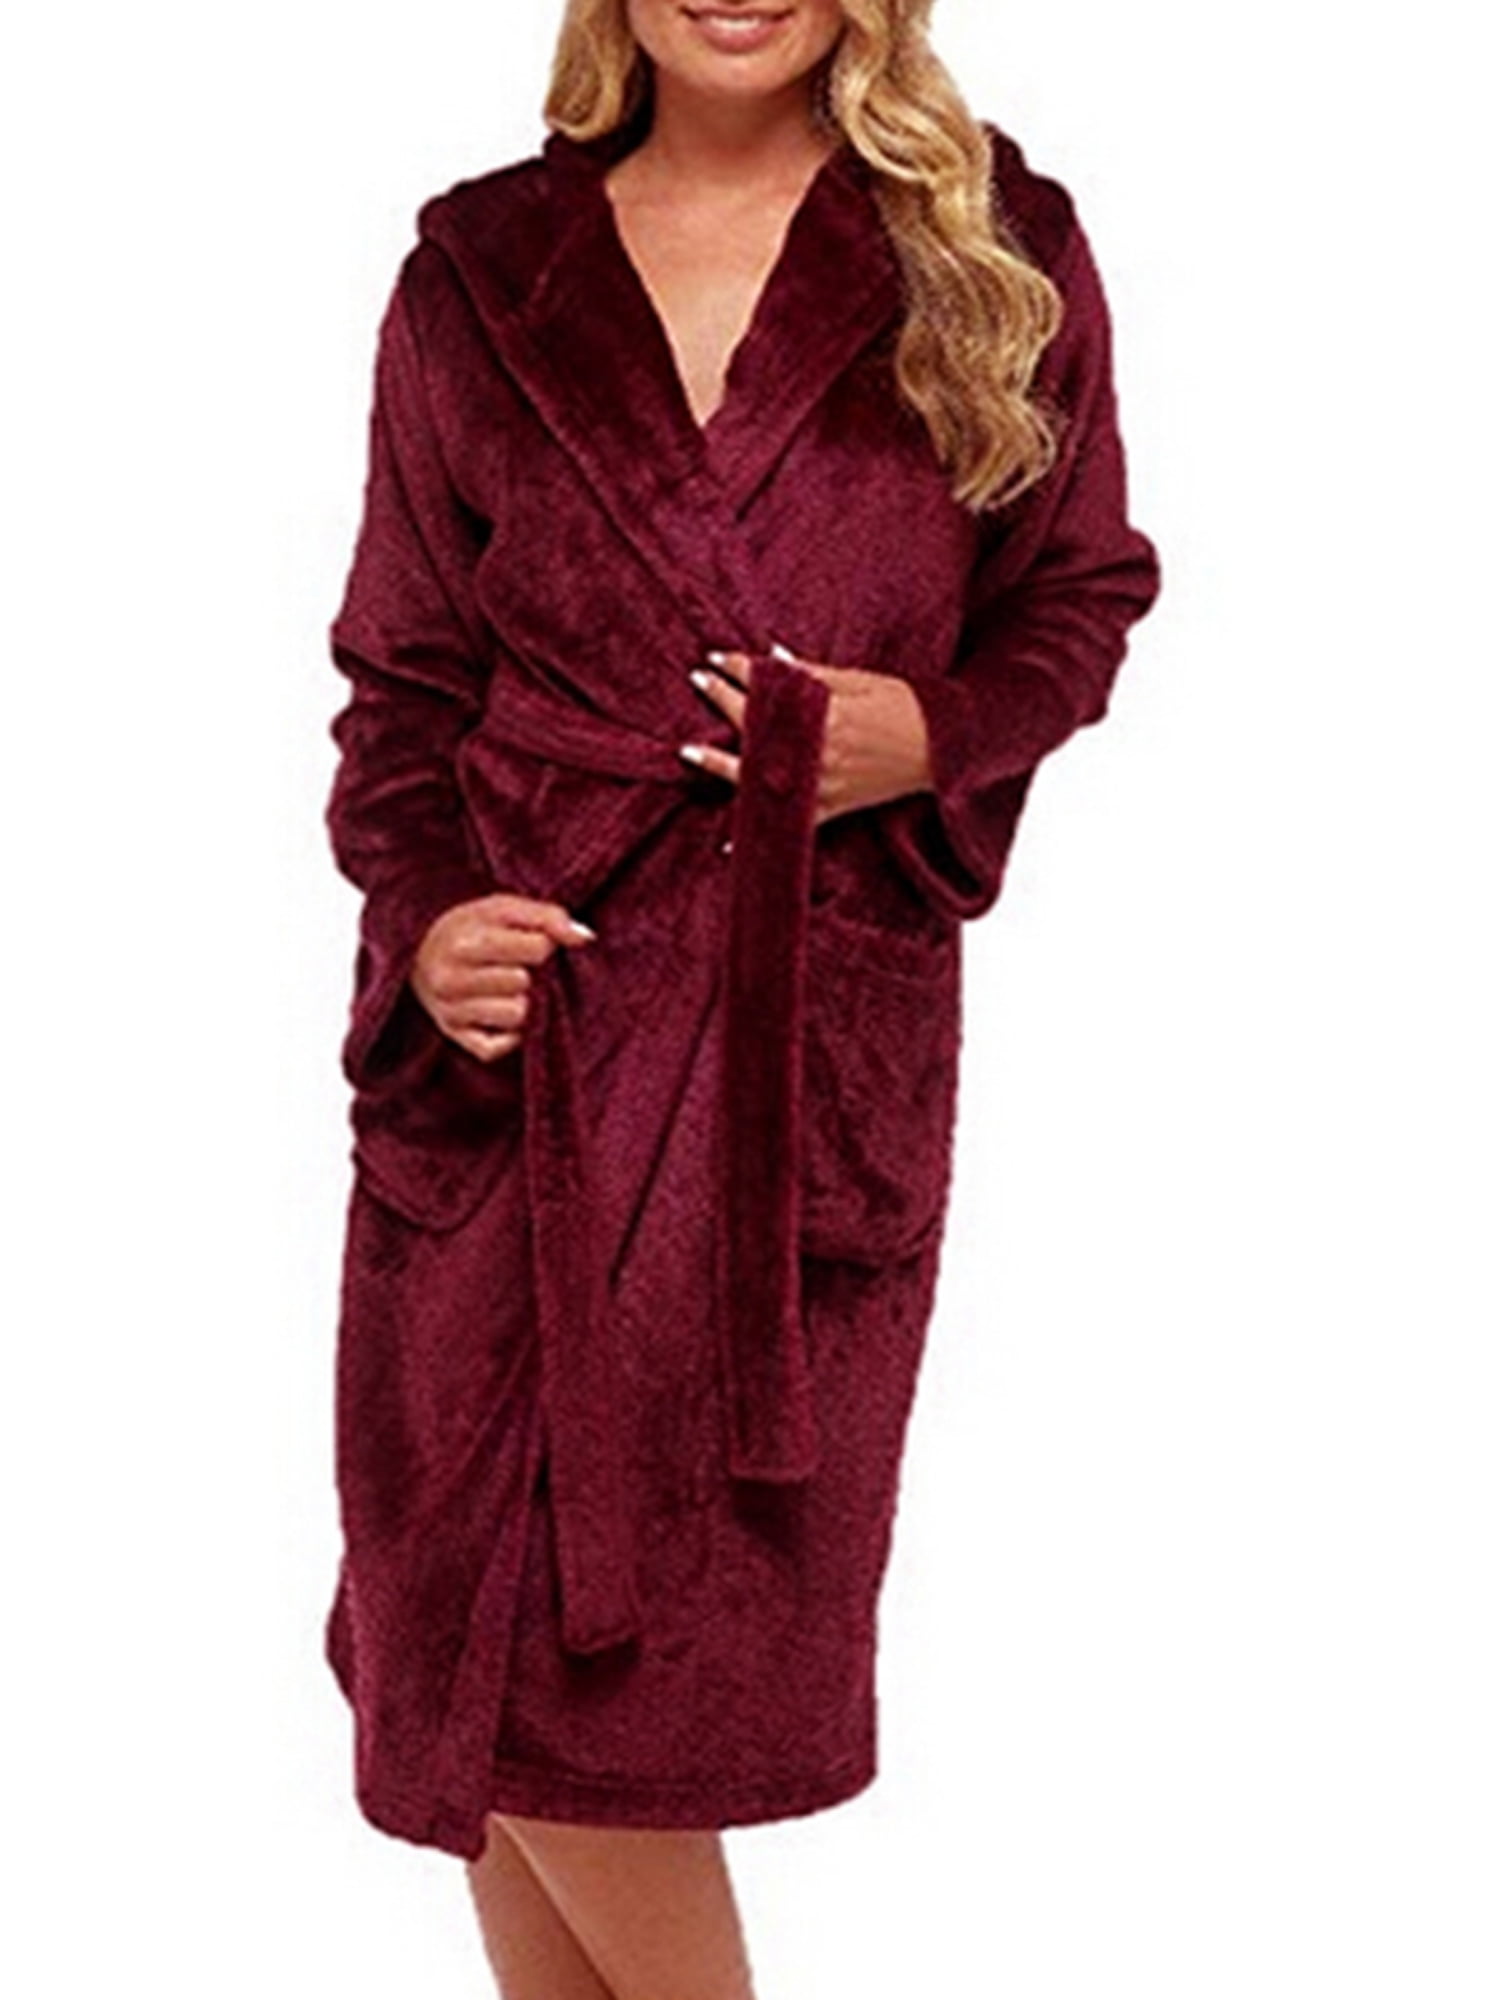 Lallc - Women's Plus Size Hooded Bathing Gown Sleepwear Fluffy Warm ...